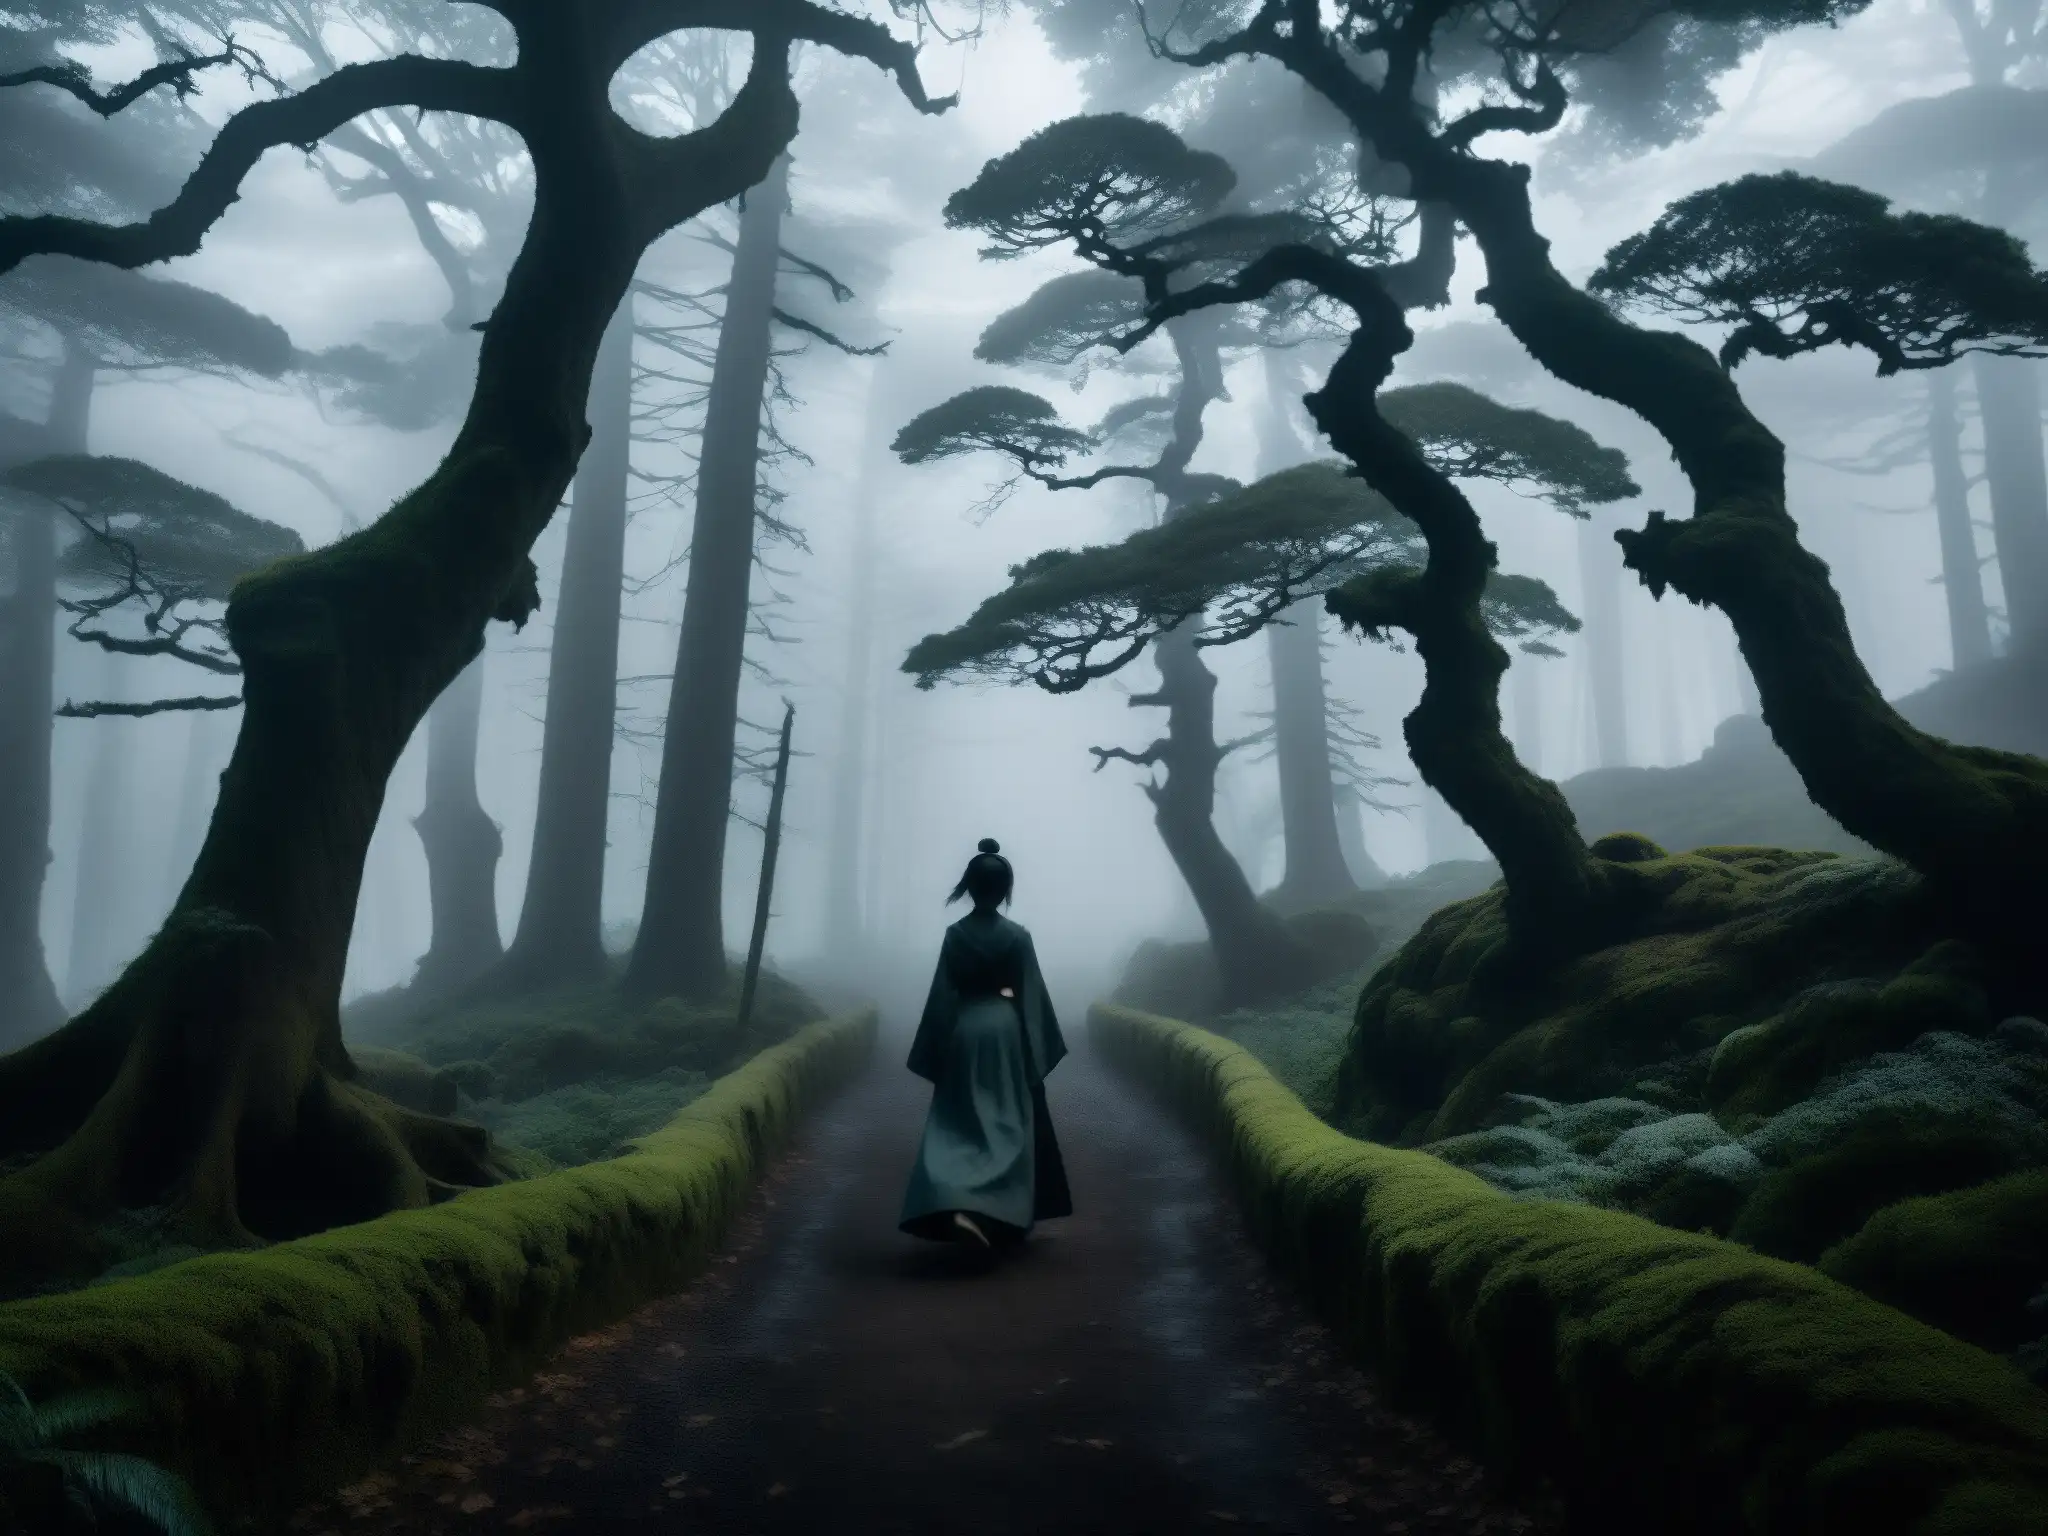 Un sendero serpenteante a través de un bosque neblinoso y sombrío, con árboles retorcidos